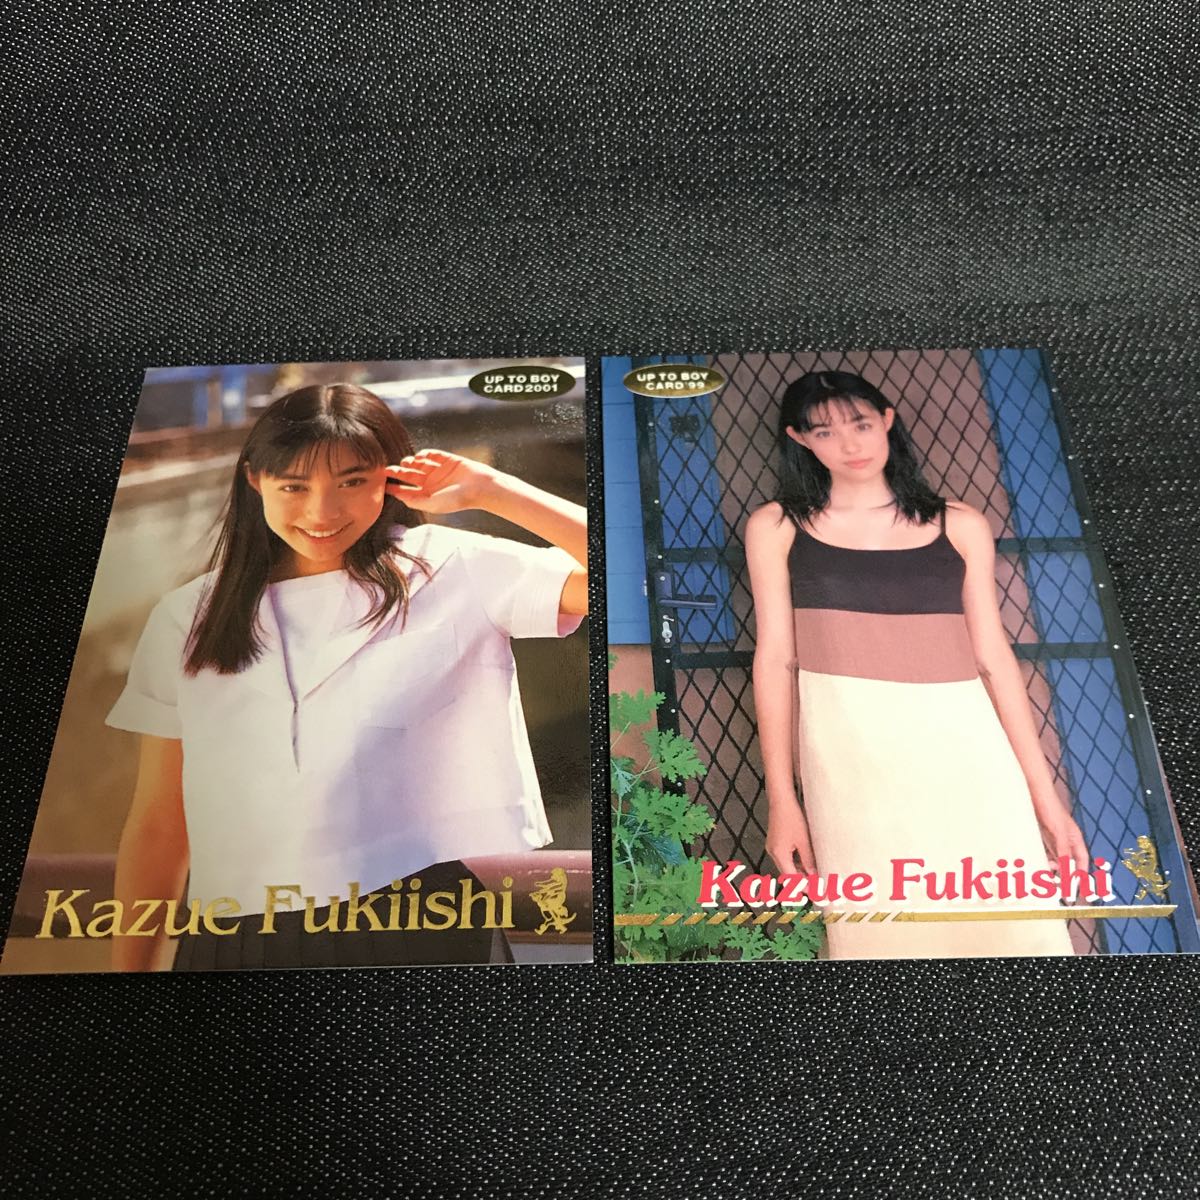 【'99 '01 UP TO BOY】Kazue Fukiishi 2 Trading Cards Set